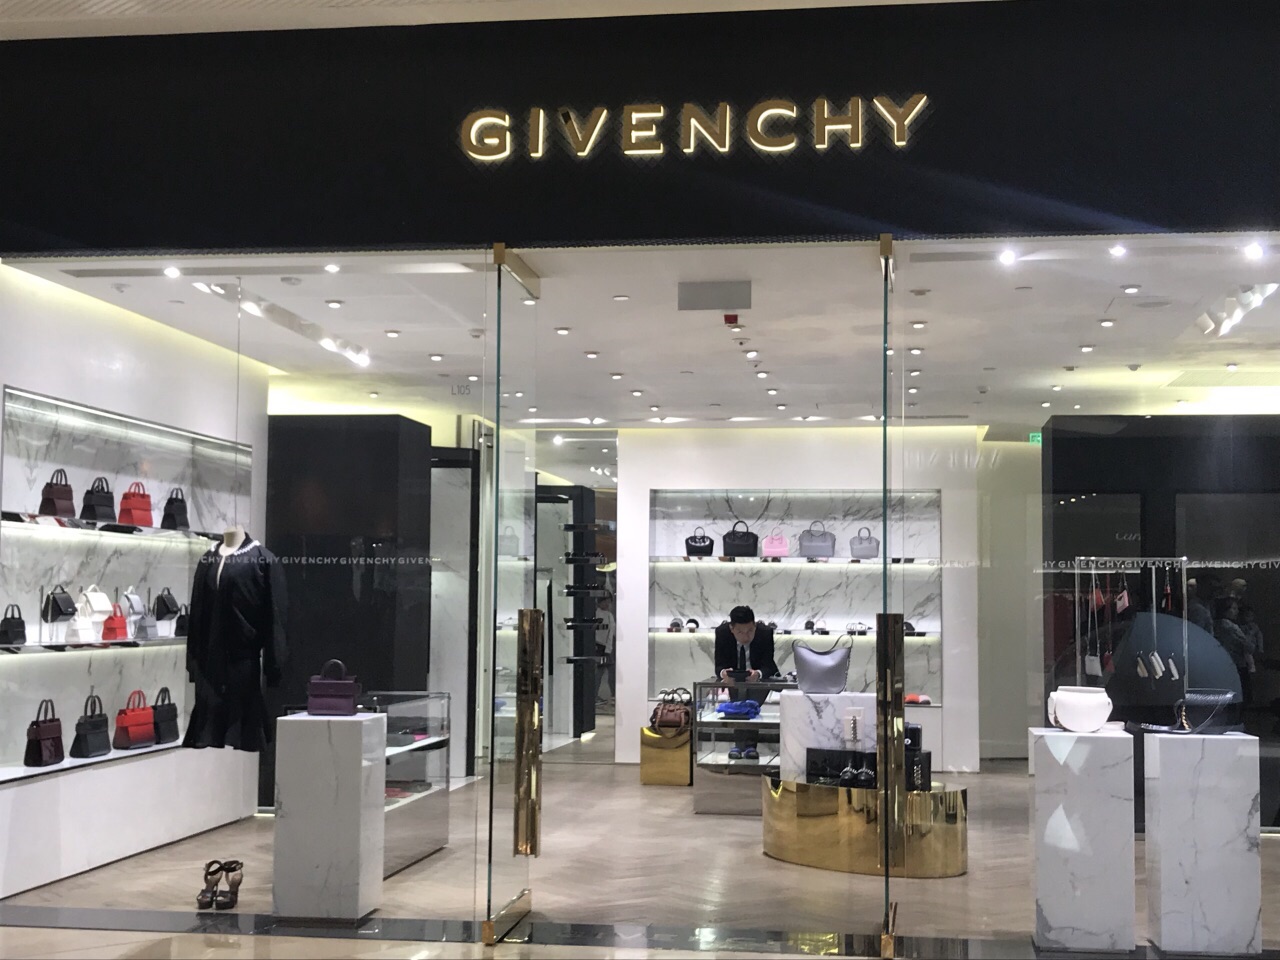 givenchy(纪梵希)的店铺,莹白纯净通透,就更衬得黑红二色的服装,鞋子